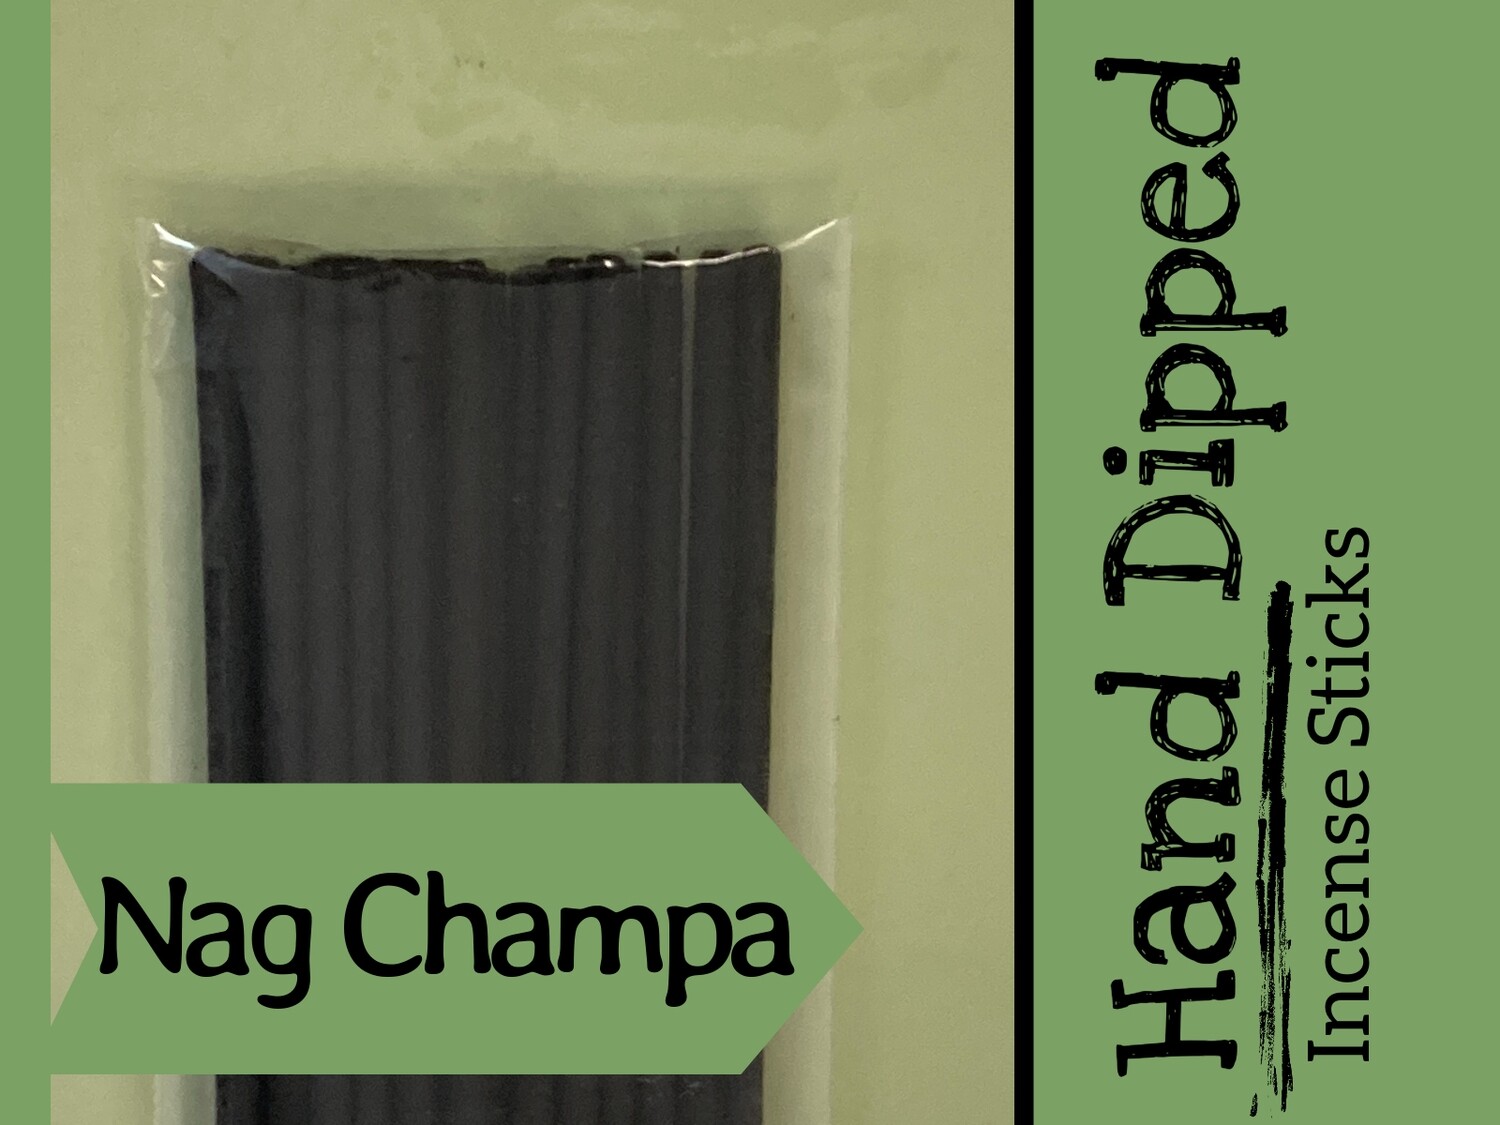 Nag Champa - Hand dipped incense